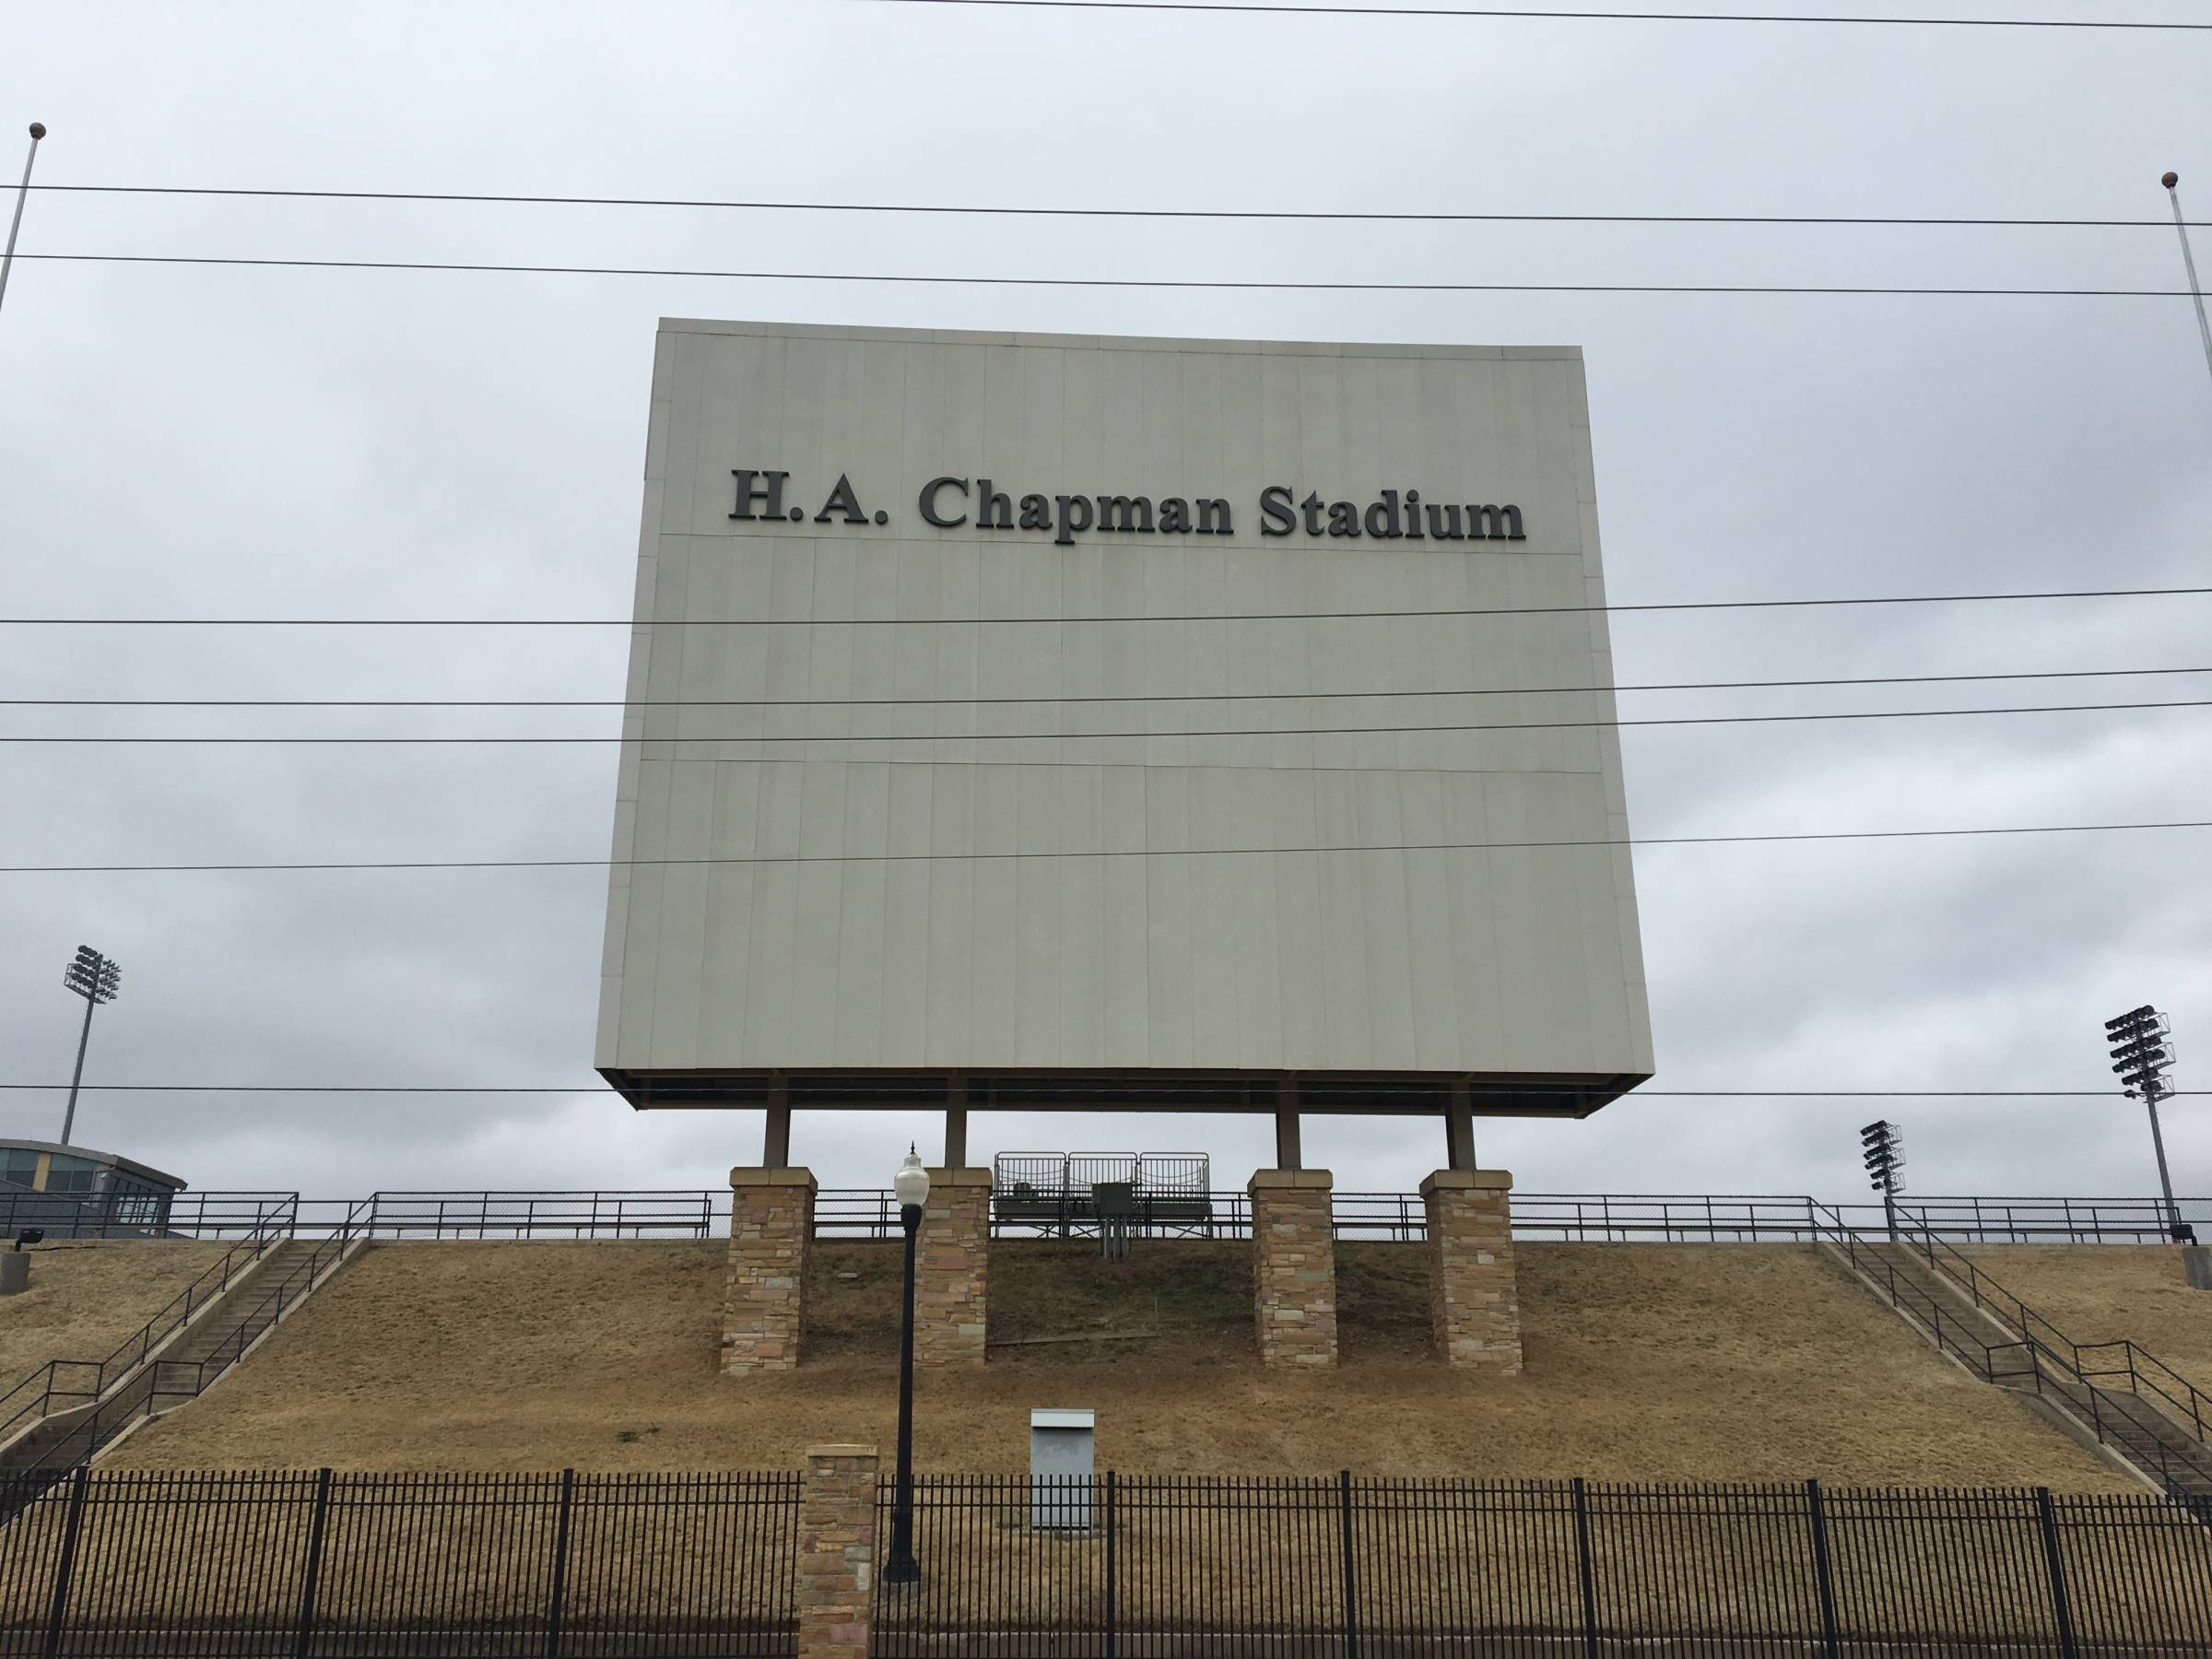 Large Scoreboard at H.A. Chapman Stadium